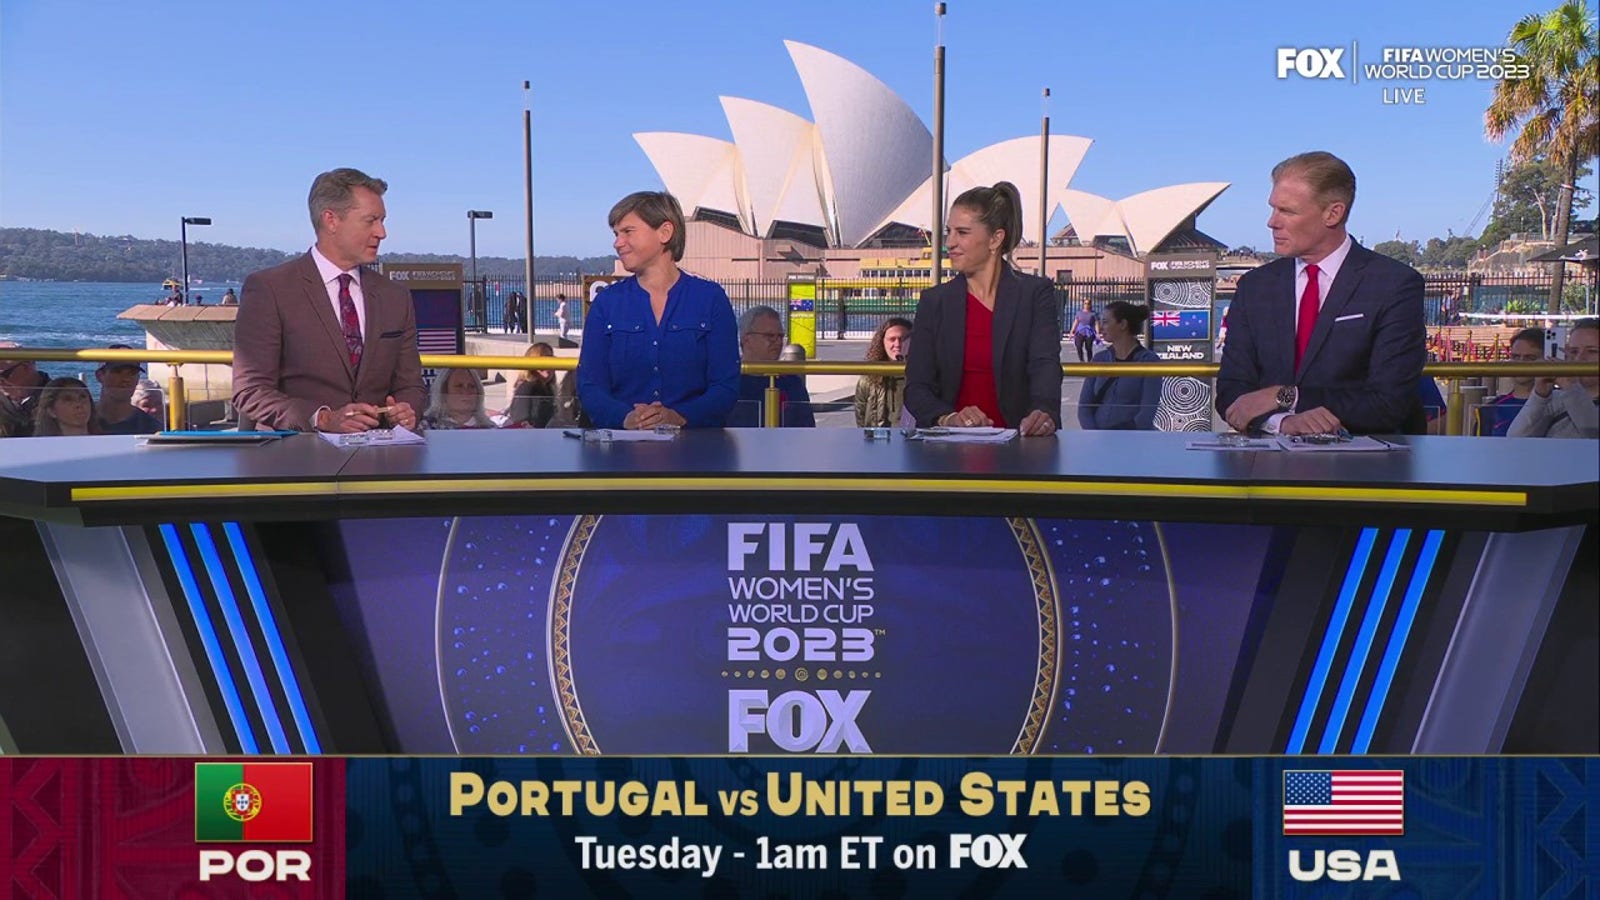 O que o USWNT deve consertar na próxima partida contra Portugal?